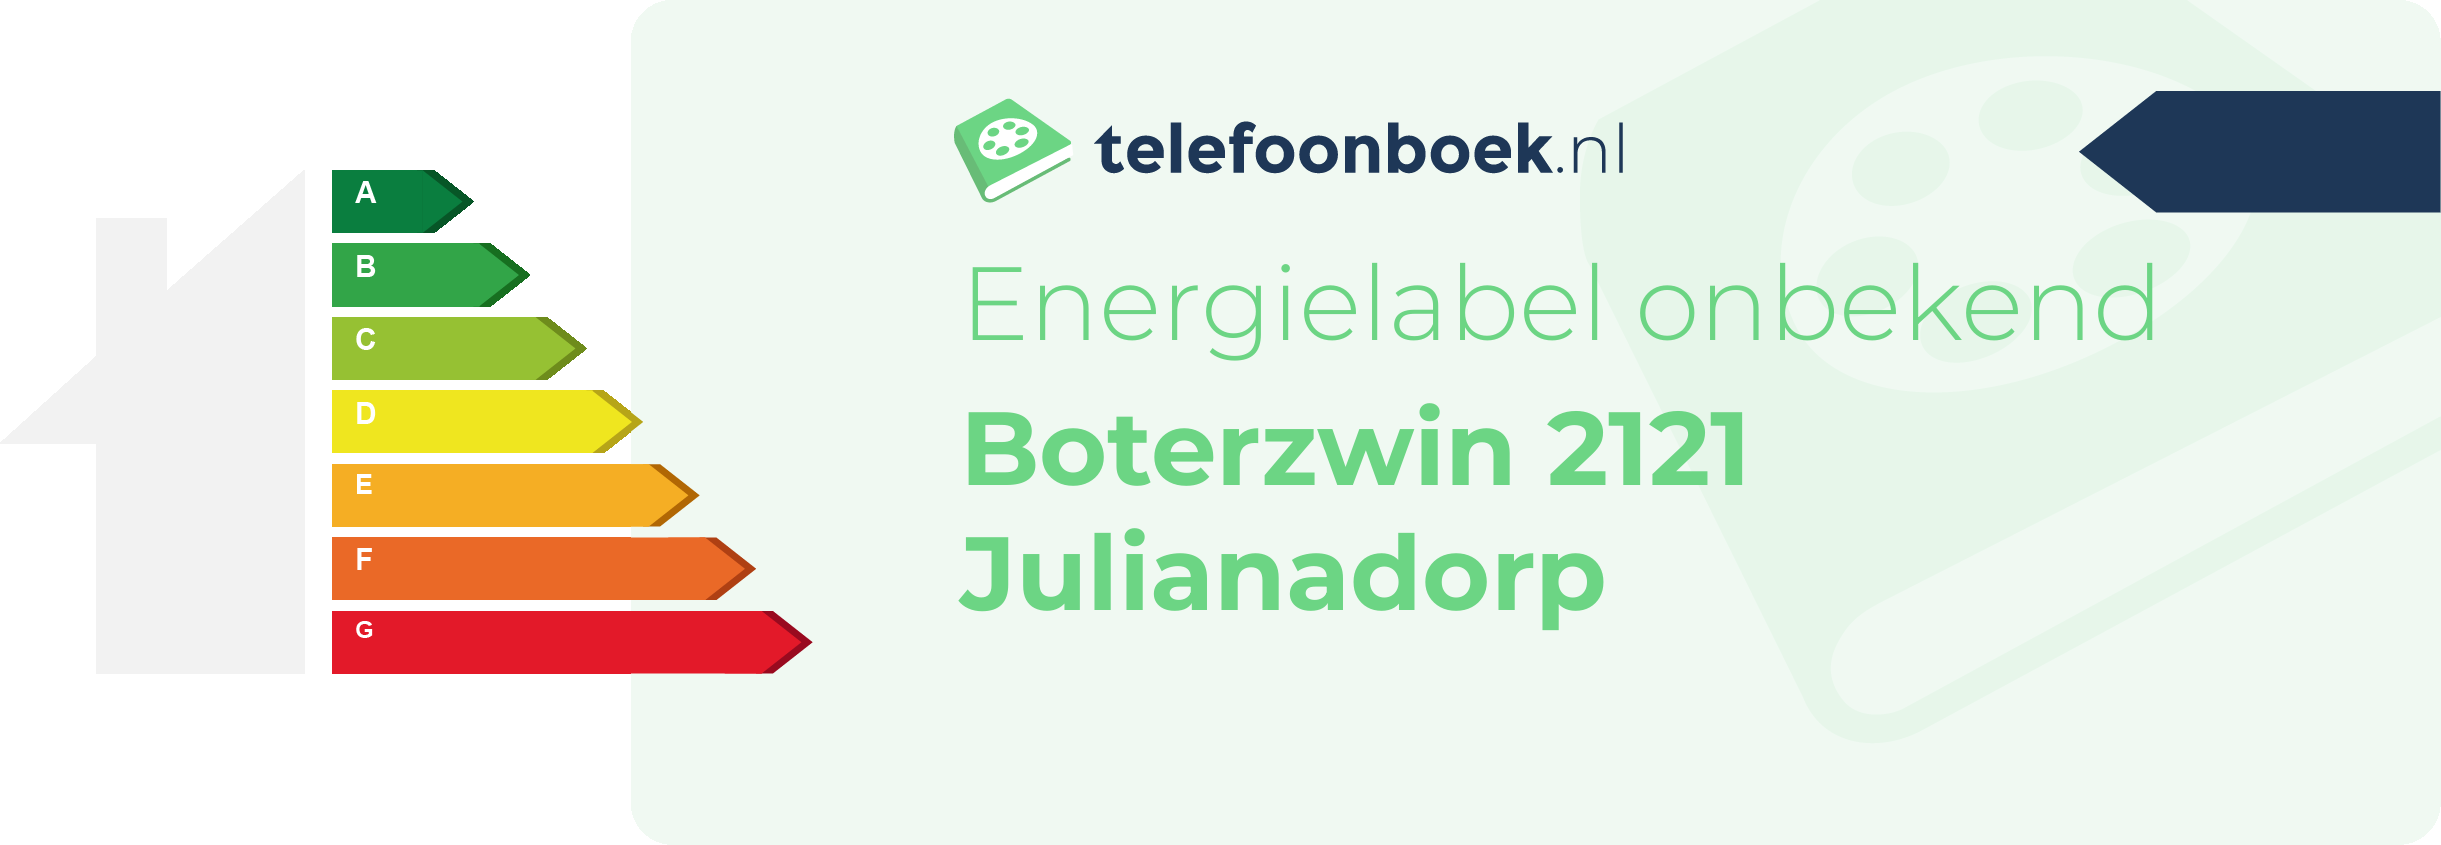 Energielabel Boterzwin 2121 Julianadorp